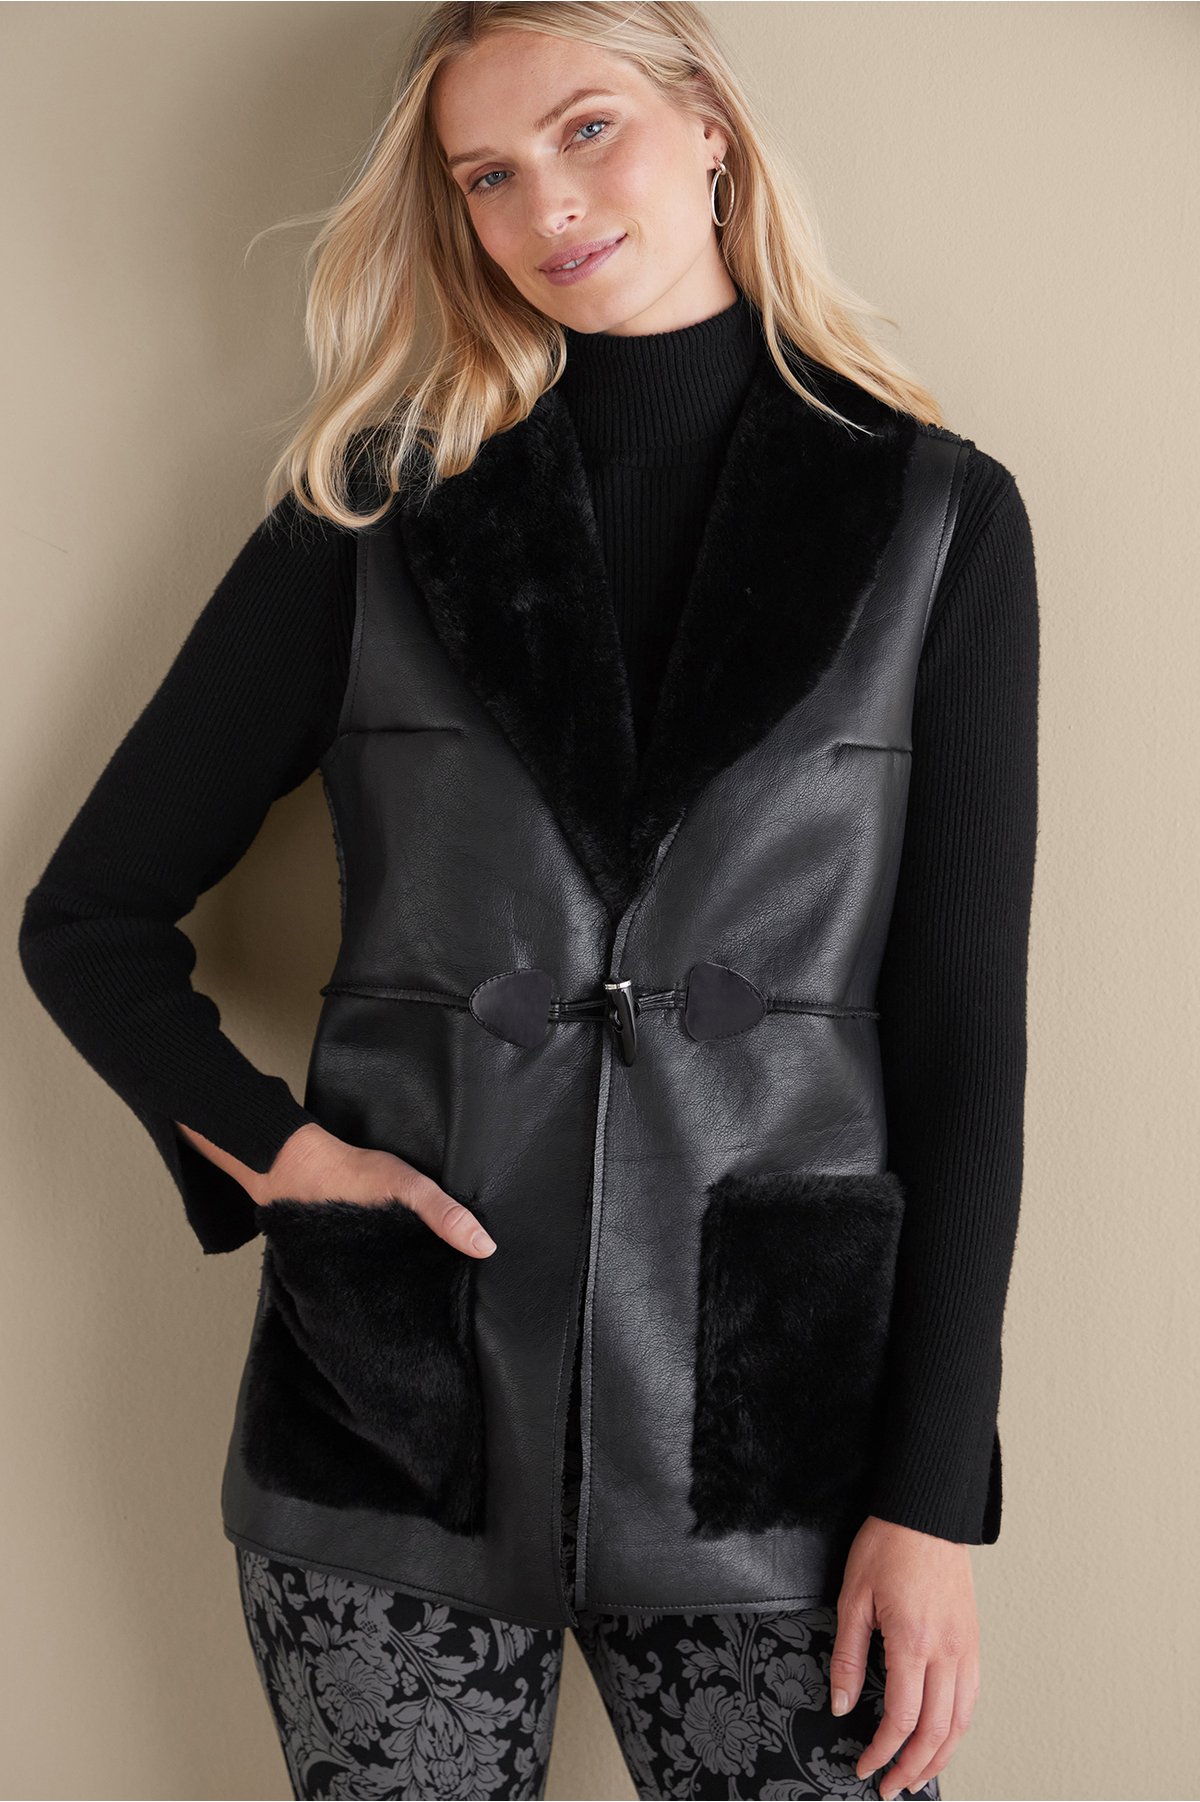 Women's Zeva Faux Leather Shearling Vest by Soft Surroundings, in Black size S (6-8)